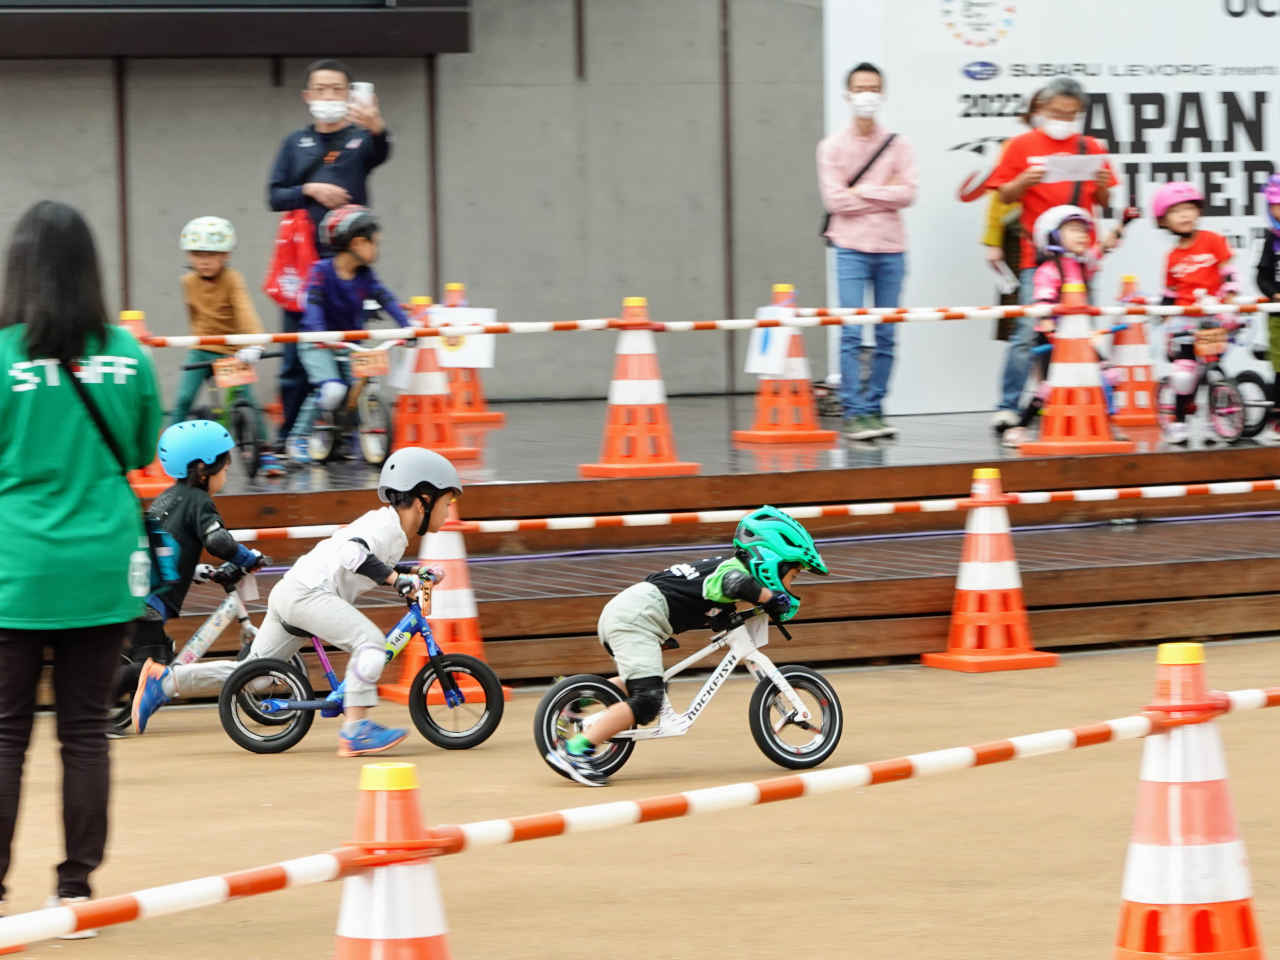 ストライダー大会のジャパンカップキックバイク大会 本予選で快走する5歳の男の子